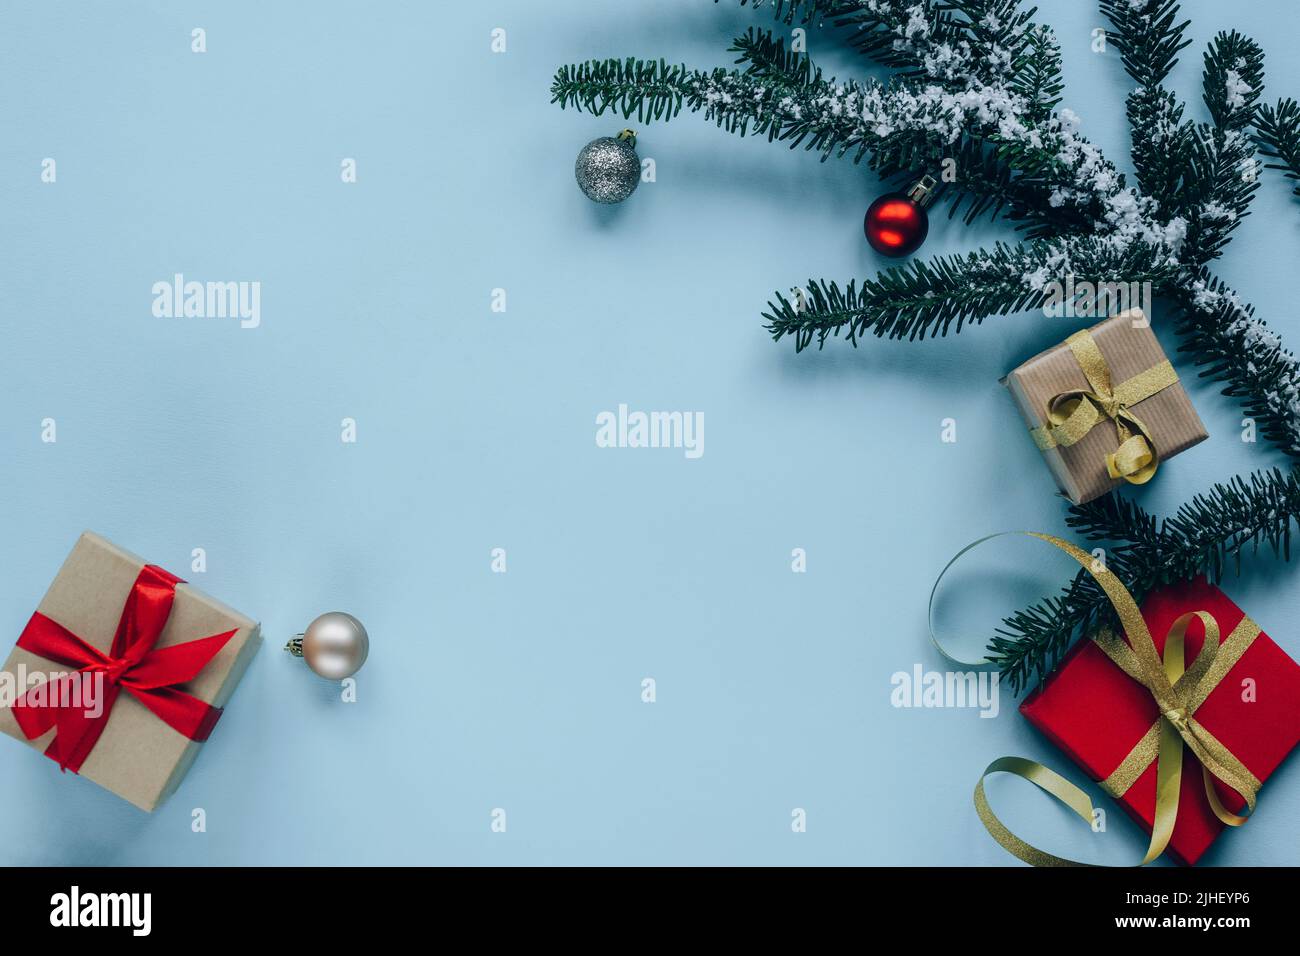 Decorazioni natalizie, scatole regalo, rami di abete, baubles su sfondo azzurro. Vista dall'alto, disposizione piatta, spazio di copia. Foto Stock